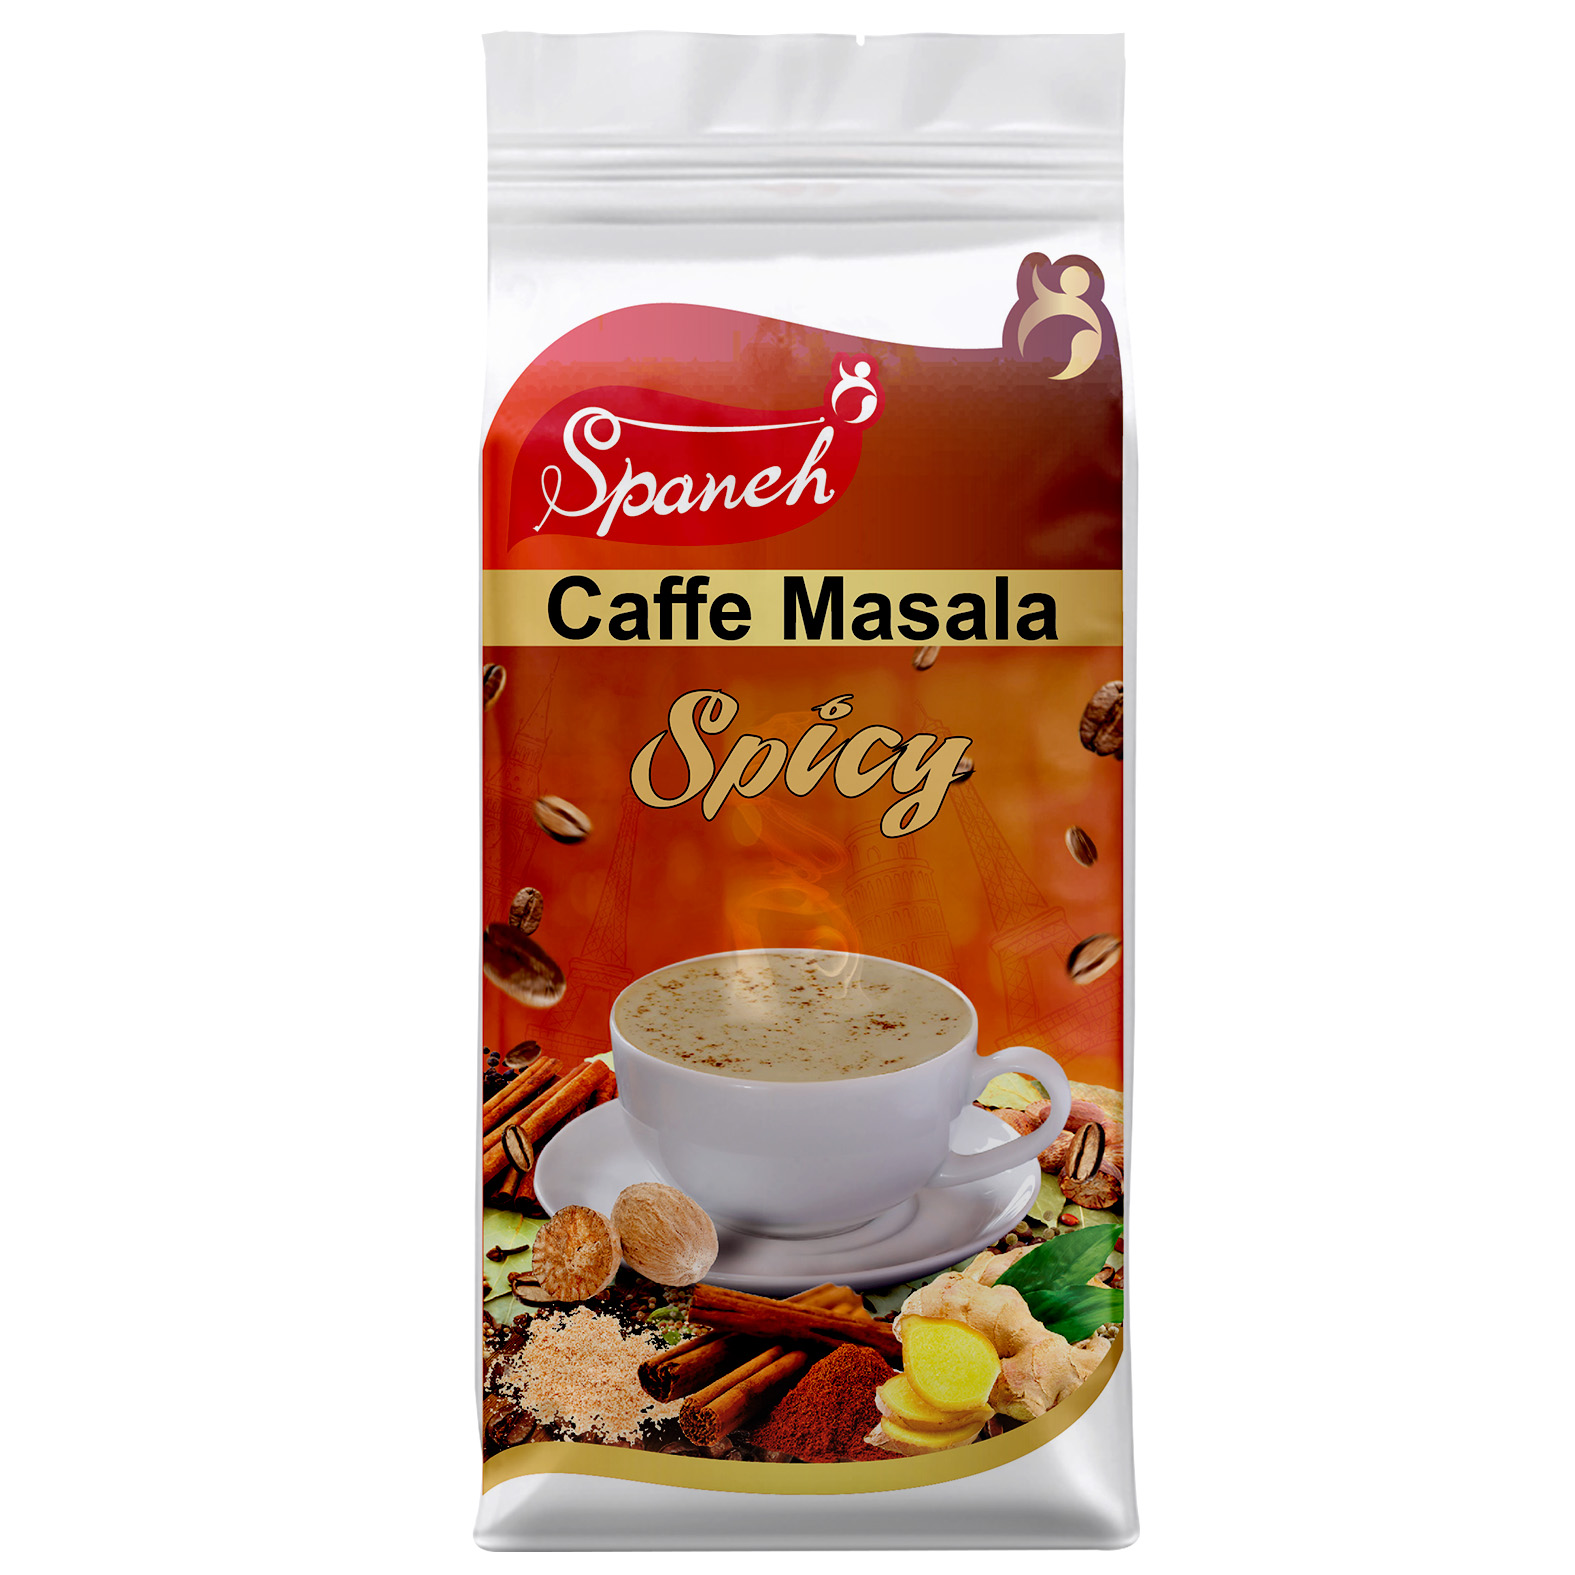 کافه ماسالا اسپانه مدل Spicy مقدار 250 گرم